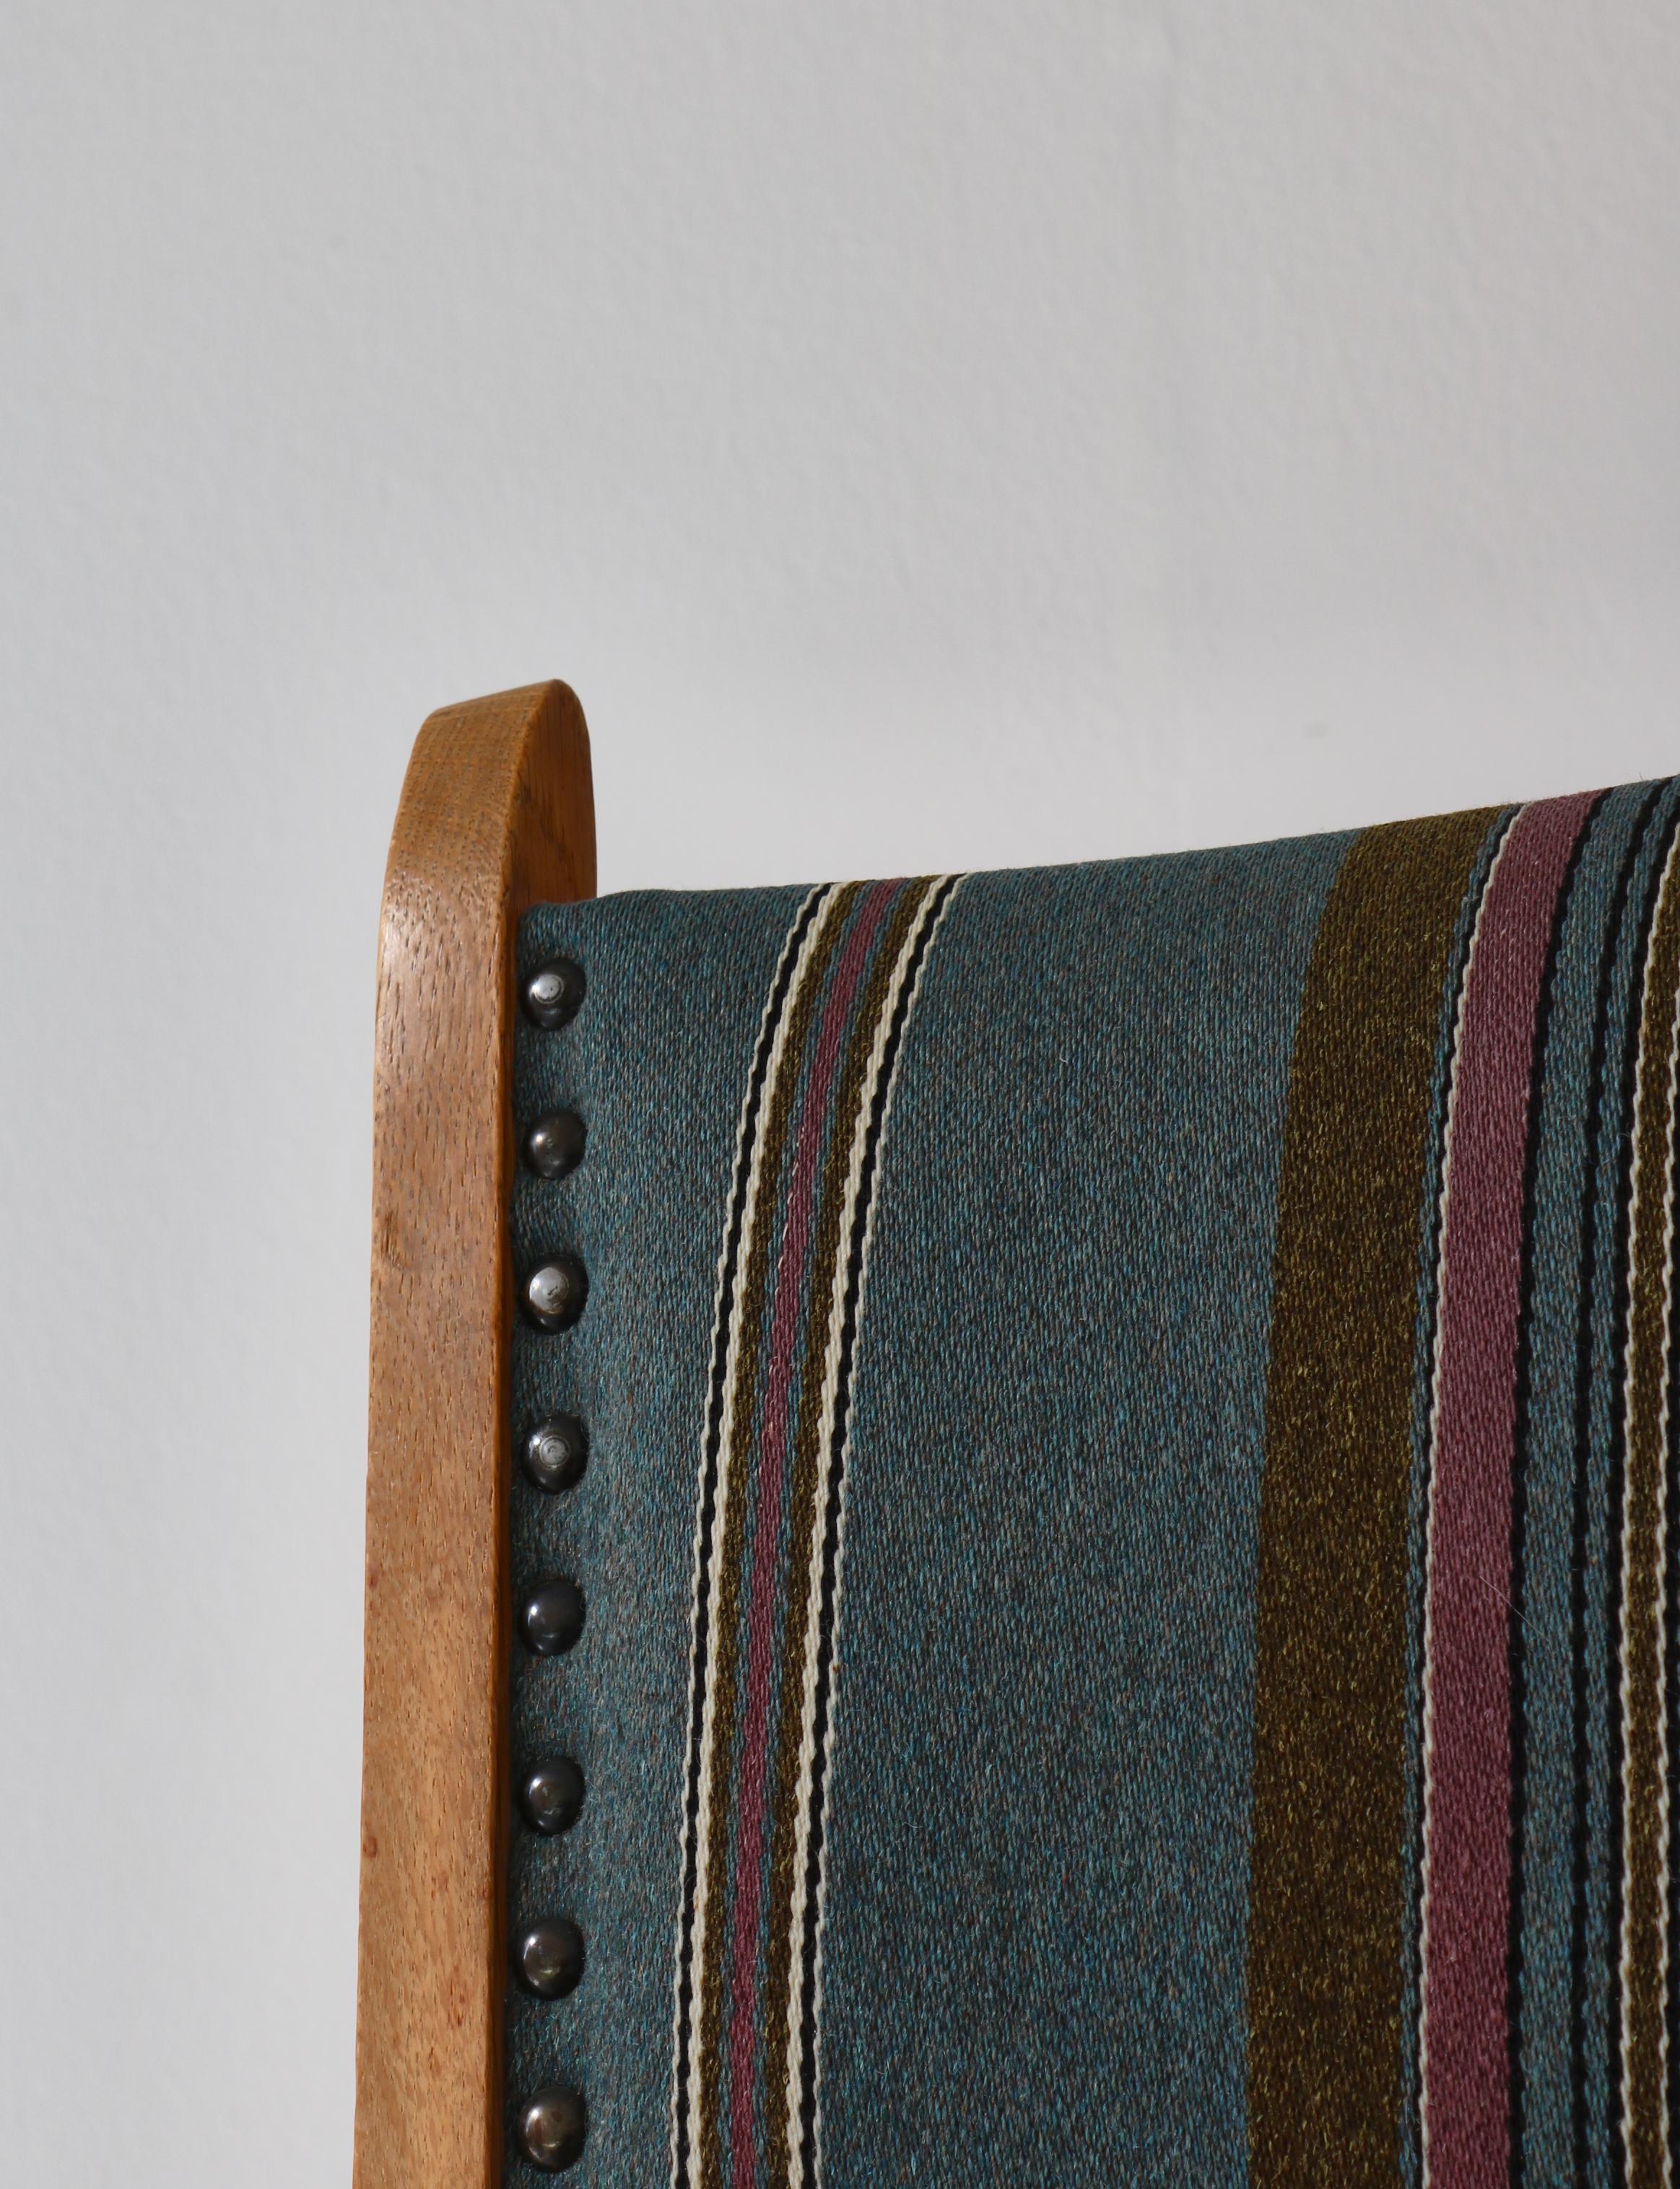 1960s Side Chair in Oak & Wool Fabric by Henry Kjærnulf, Danish Modern For Sale 2